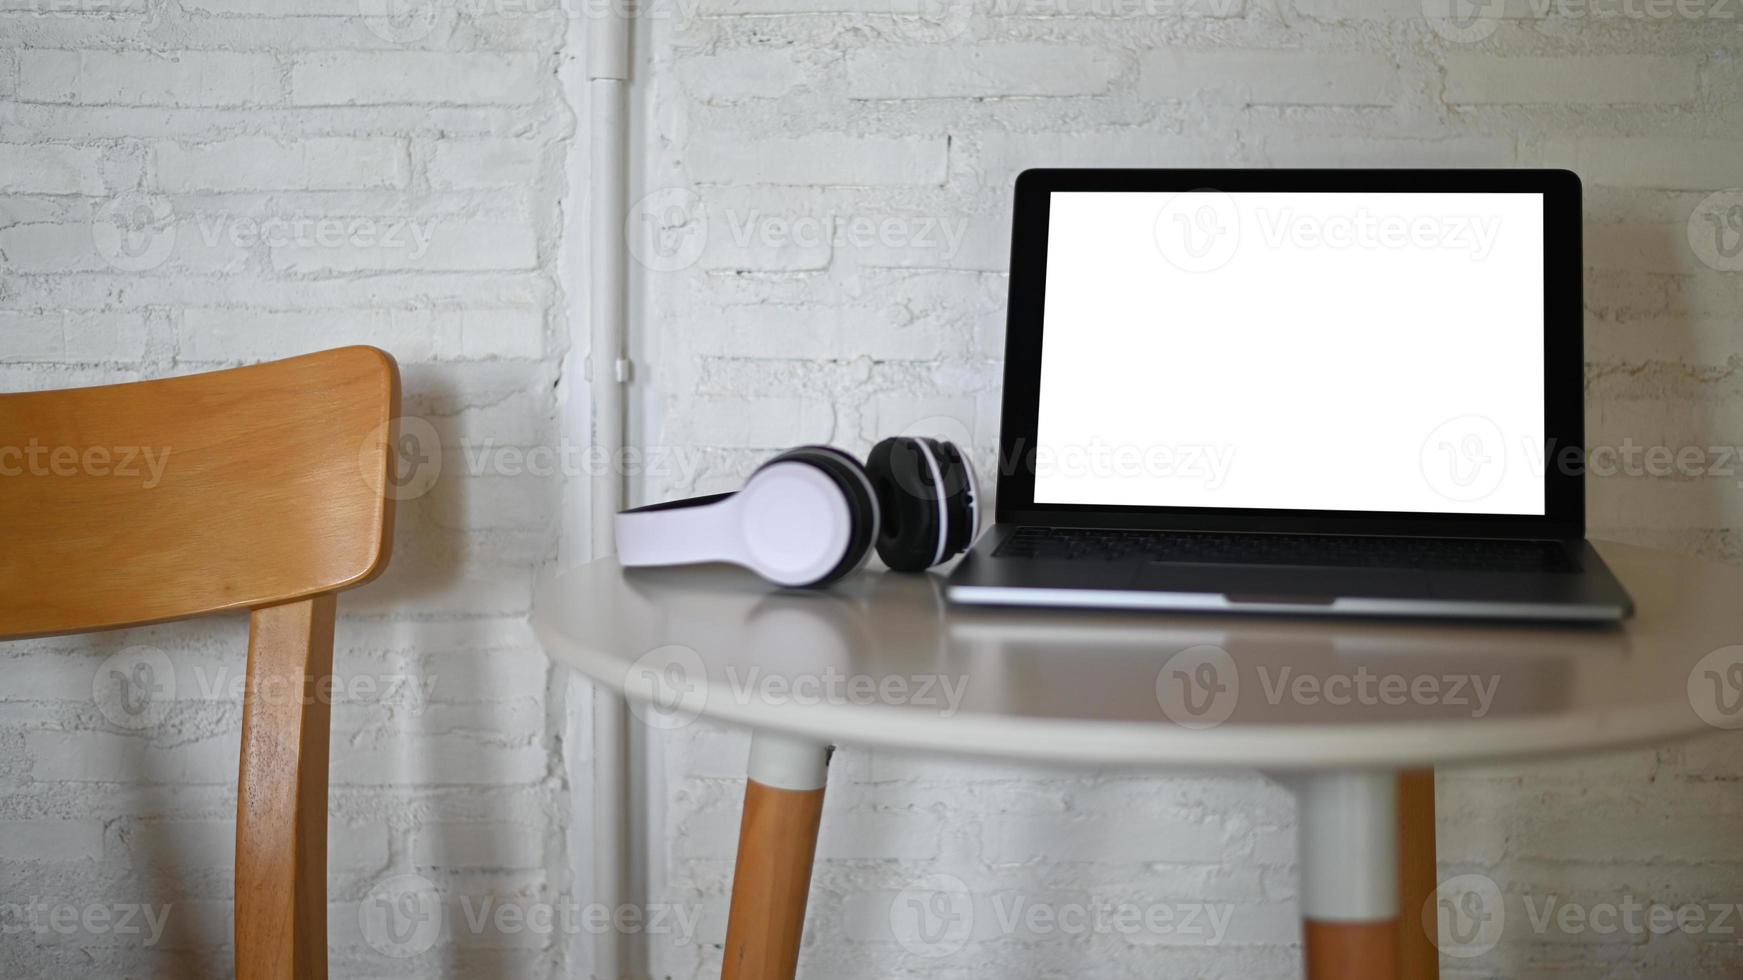 mockup laptop schermo vuoto e cuffie posizionate su un tavolo in un bar. foto